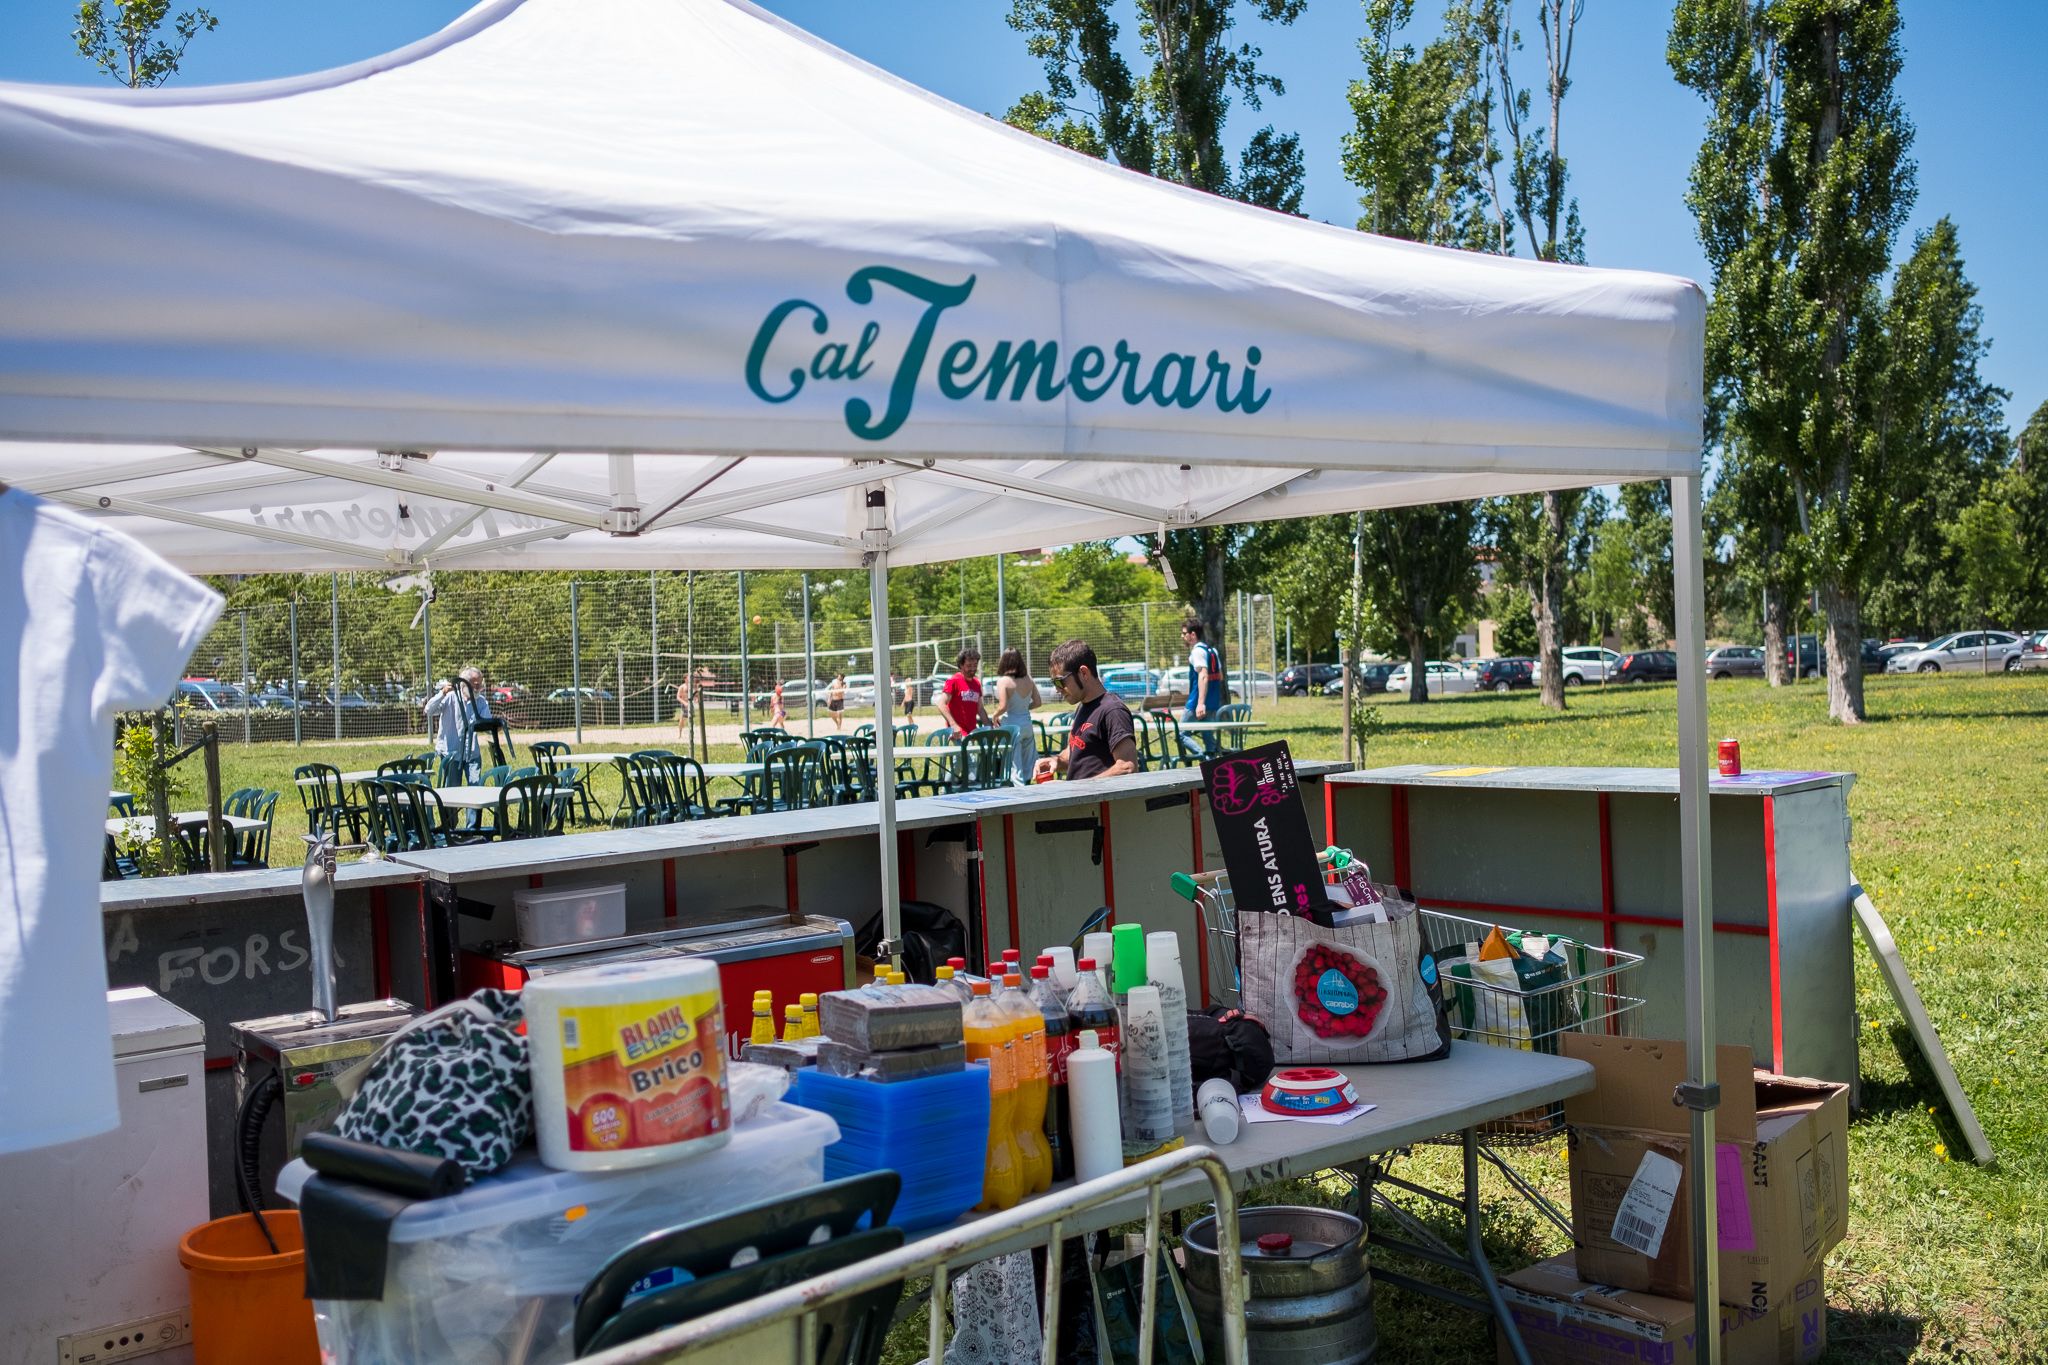 Cal Temerari celebra 4 anys al parc de Can Vernet. FOTO: Ale Gómez